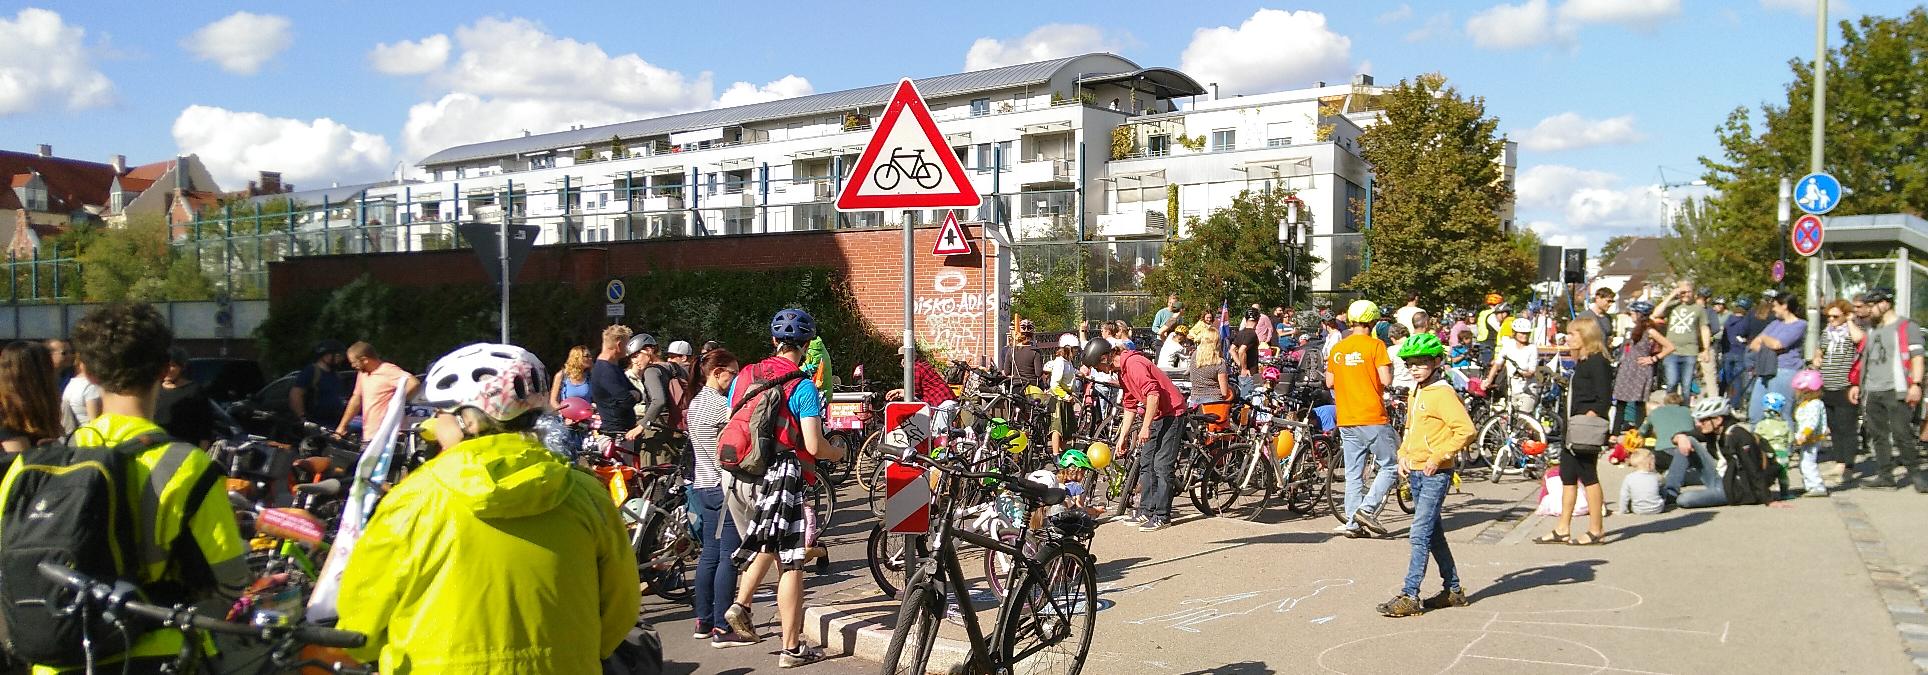 Auf der Brücke der Hochfeldstraße über die Bahnlinie stehen Fahrräder und Menschen, die meisten mit Helm. Es gibt Kreidezeichnungen auf dem Asphalt und Luftballons. Die Menschen stehen zwischen ihren Fahrrädern und unterhalten sich.